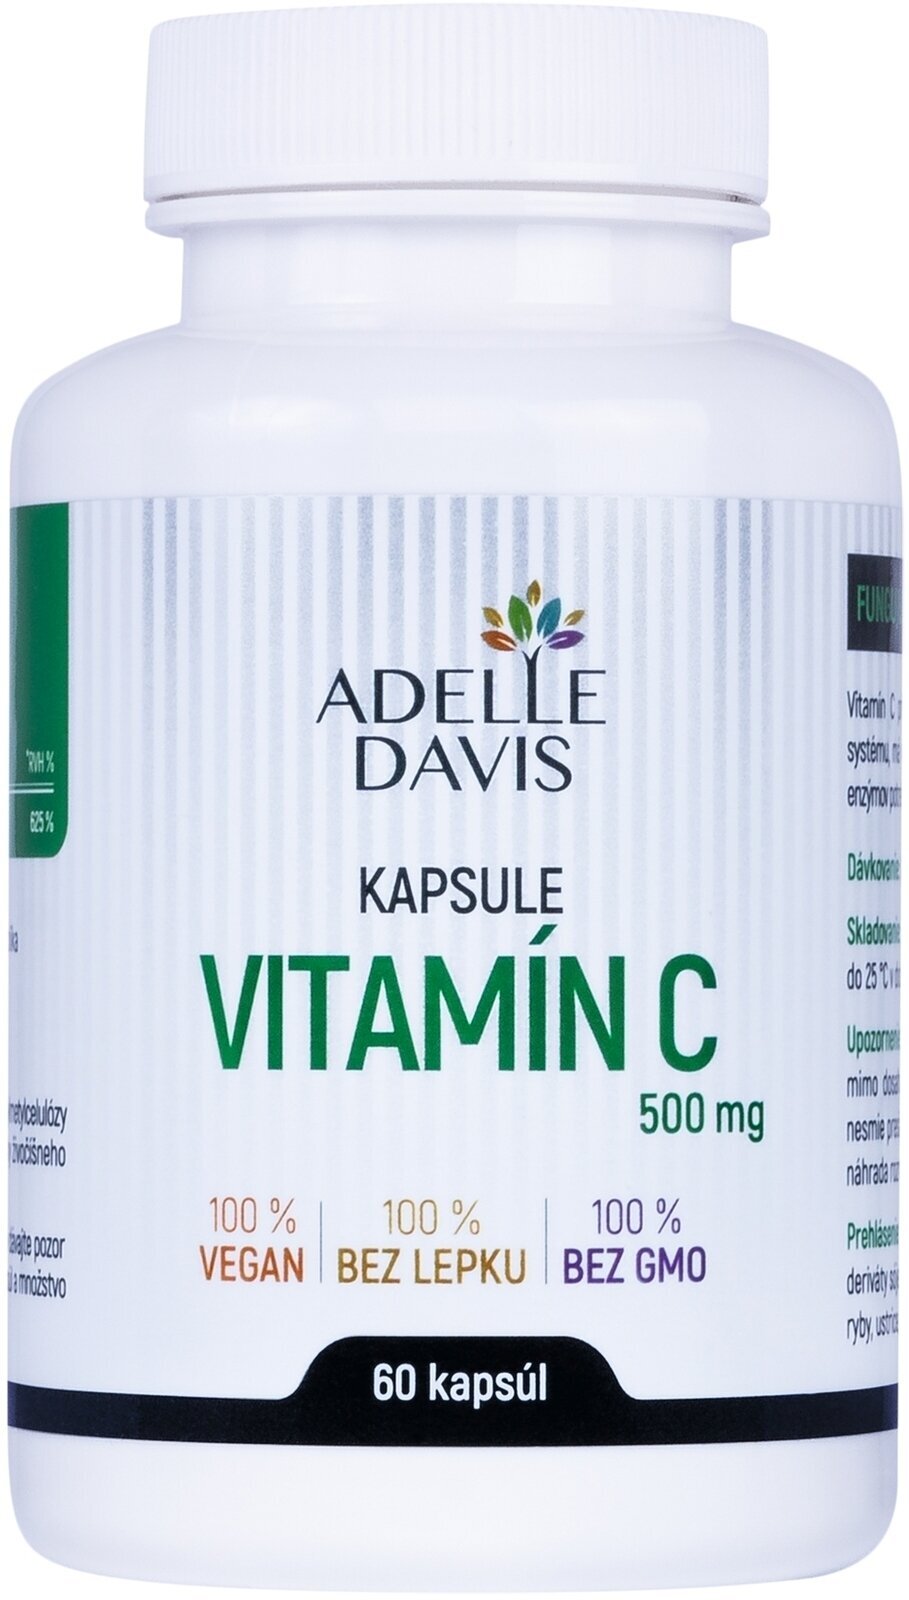 Vitamina C Adelle Davis Vitamin C Vitamina C